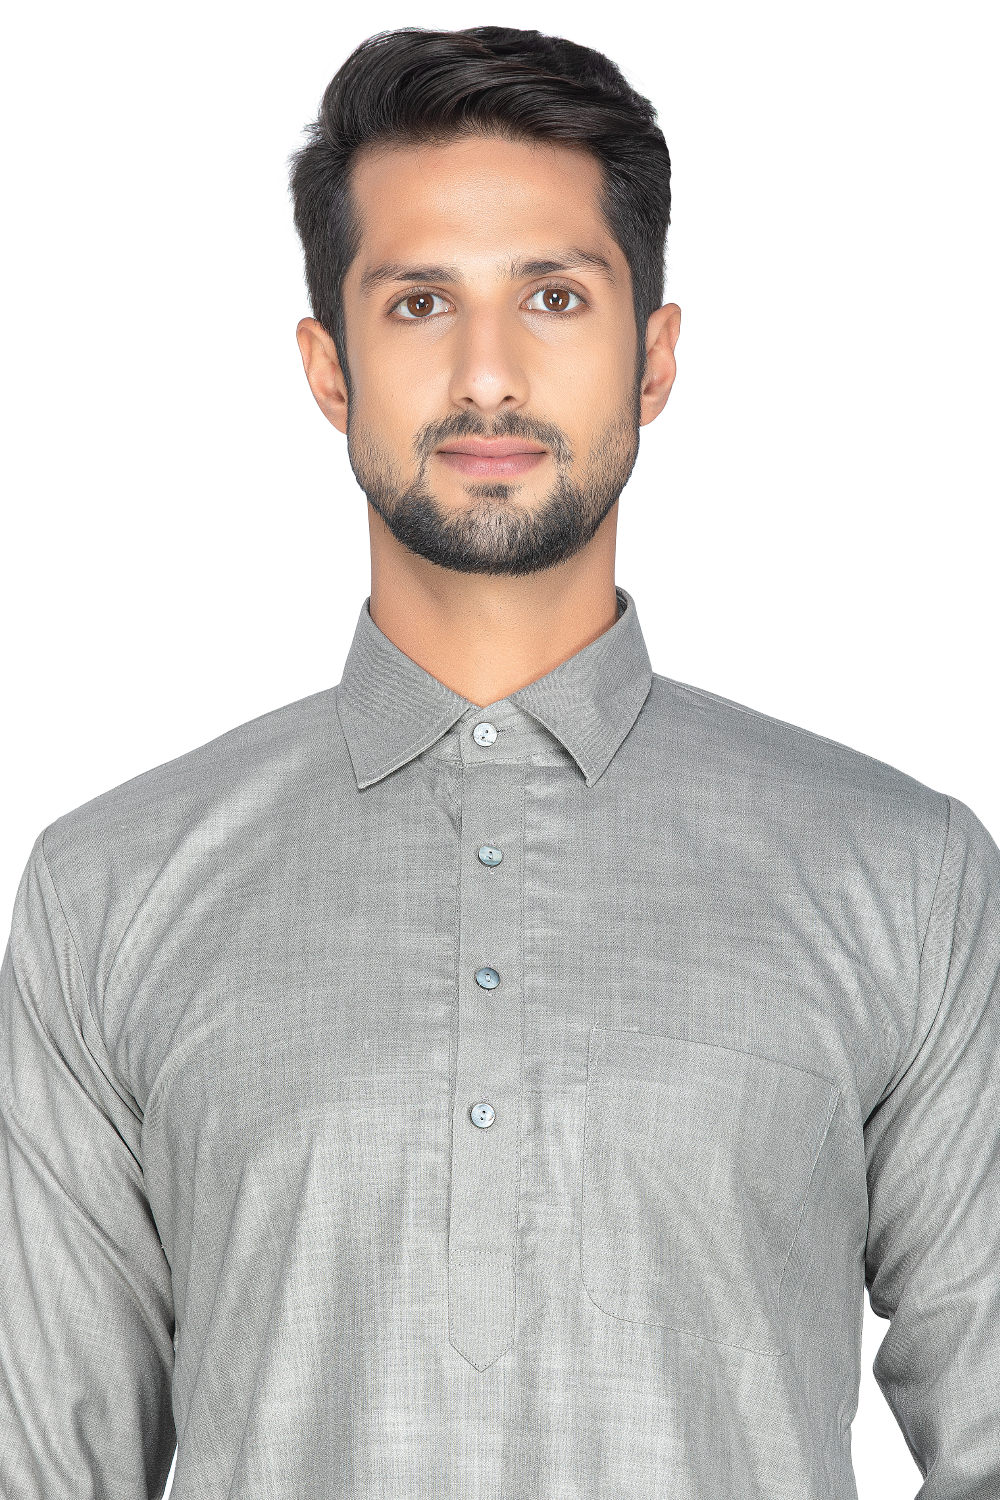 Casual and stylish grey shirt collar kurta and salwar